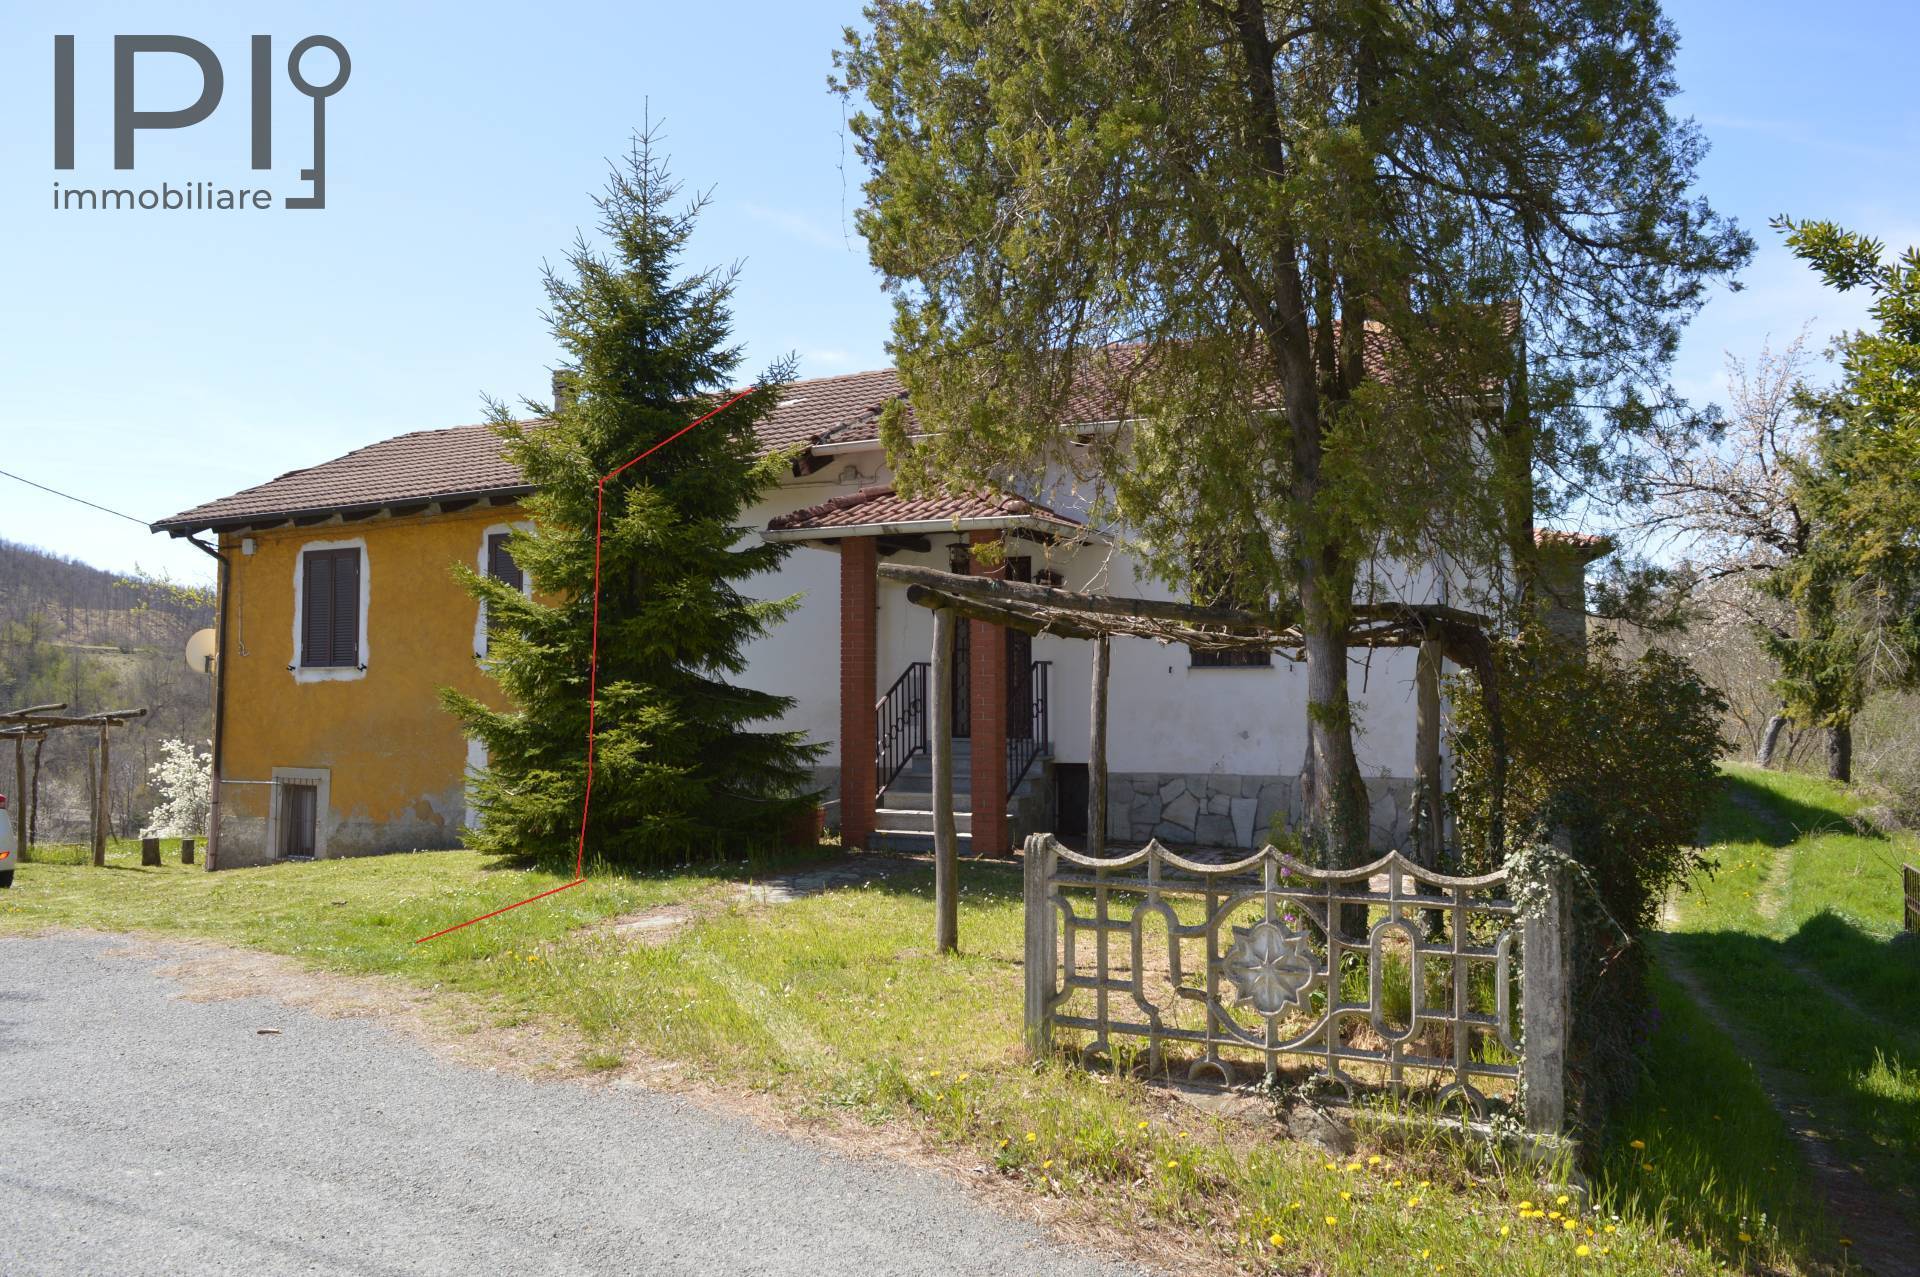 Rustico / Casale in vendita a Spigno Monferrato, 12 locali, prezzo € 110.000 | PortaleAgenzieImmobiliari.it